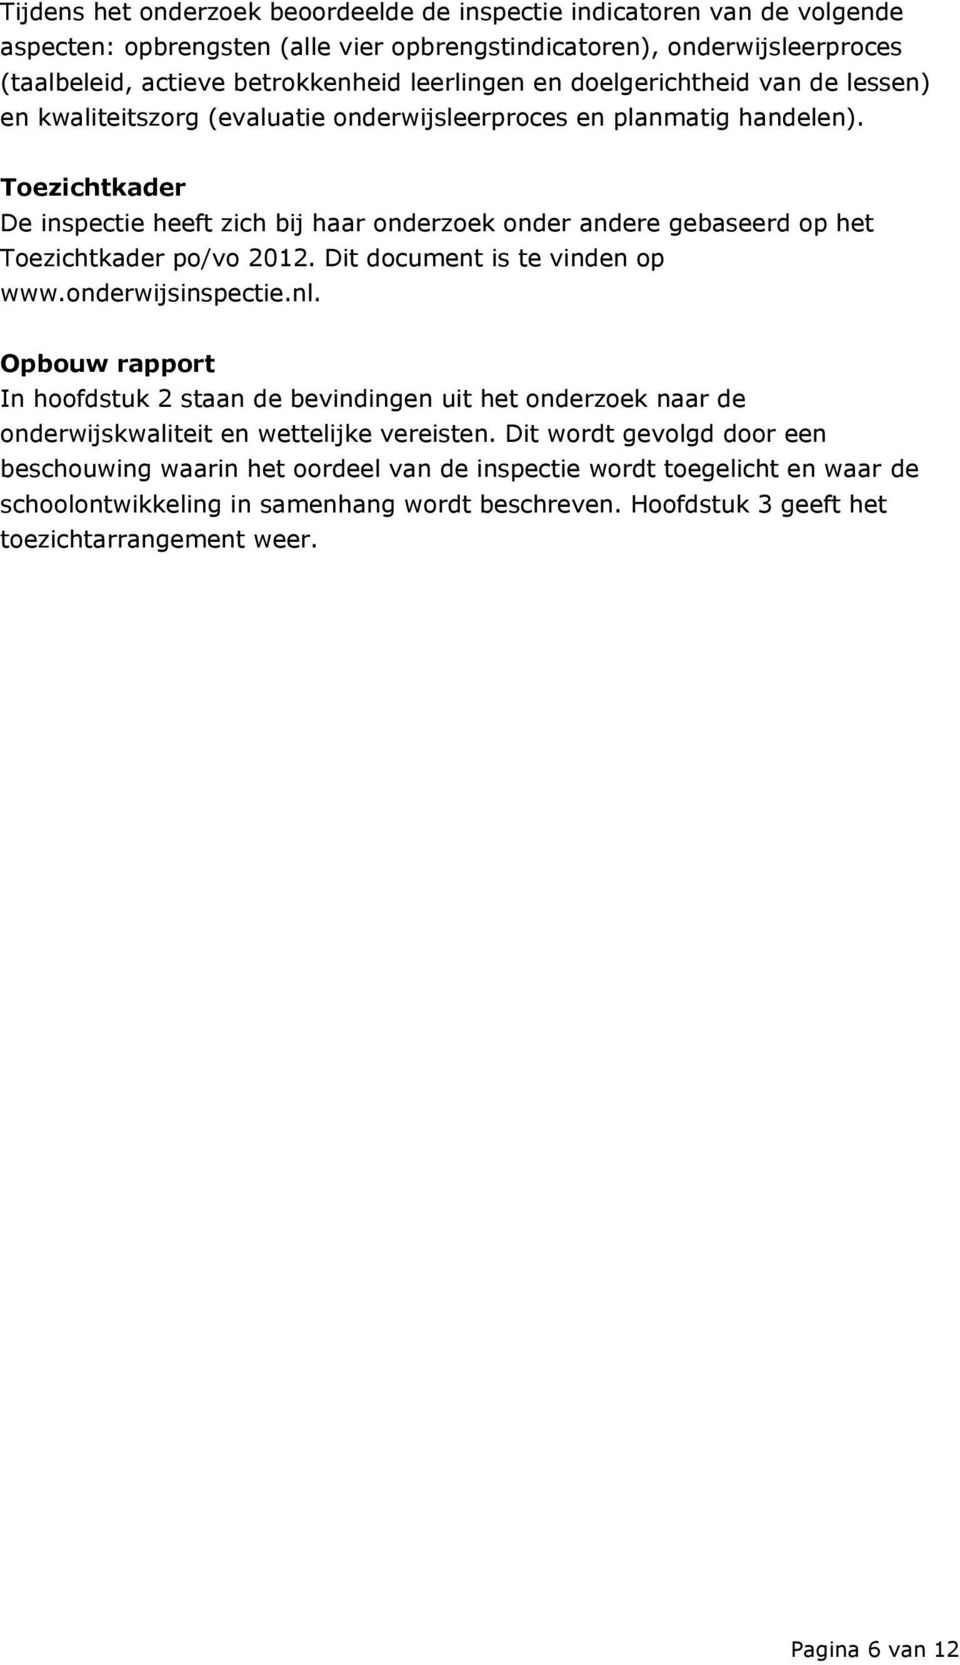 Toezichtkader De inspectie heeft zich bij haar onderzoek onder andere gebaseerd op het Toezichtkader po/vo 2012. Dit document is te vinden op www.onderwijsinspectie.nl.